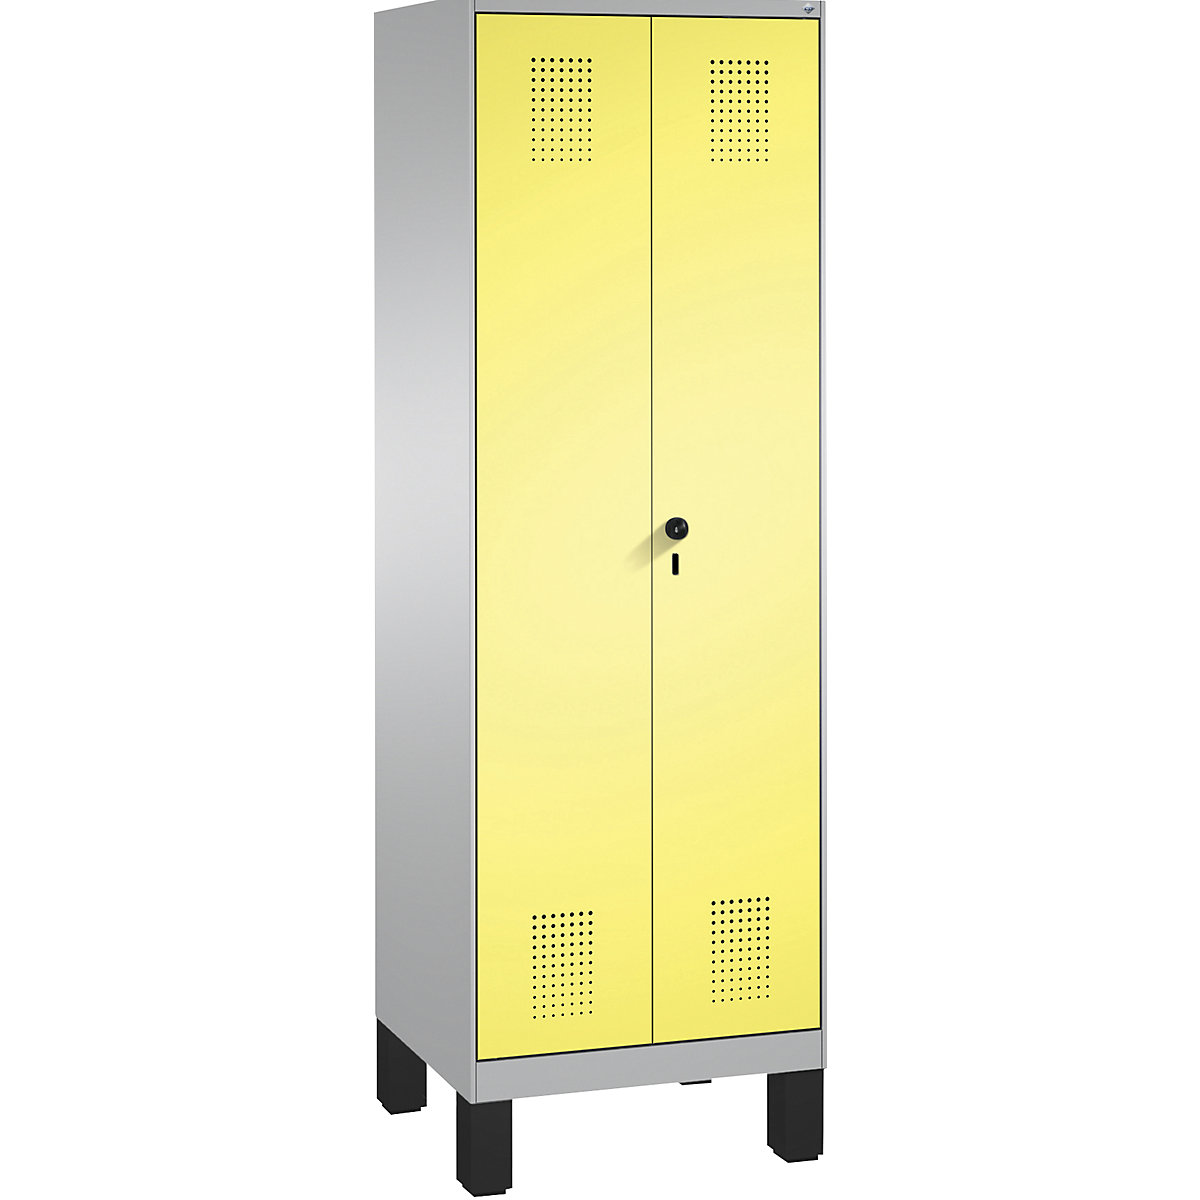 EVOLO takarítószer-/készüléktároló szekrény – C+P, rövidített válaszfal, 6 akasztó, rekeszek 2 x 300 mm, lábakkal, fehéralumínium / kénsárga-6